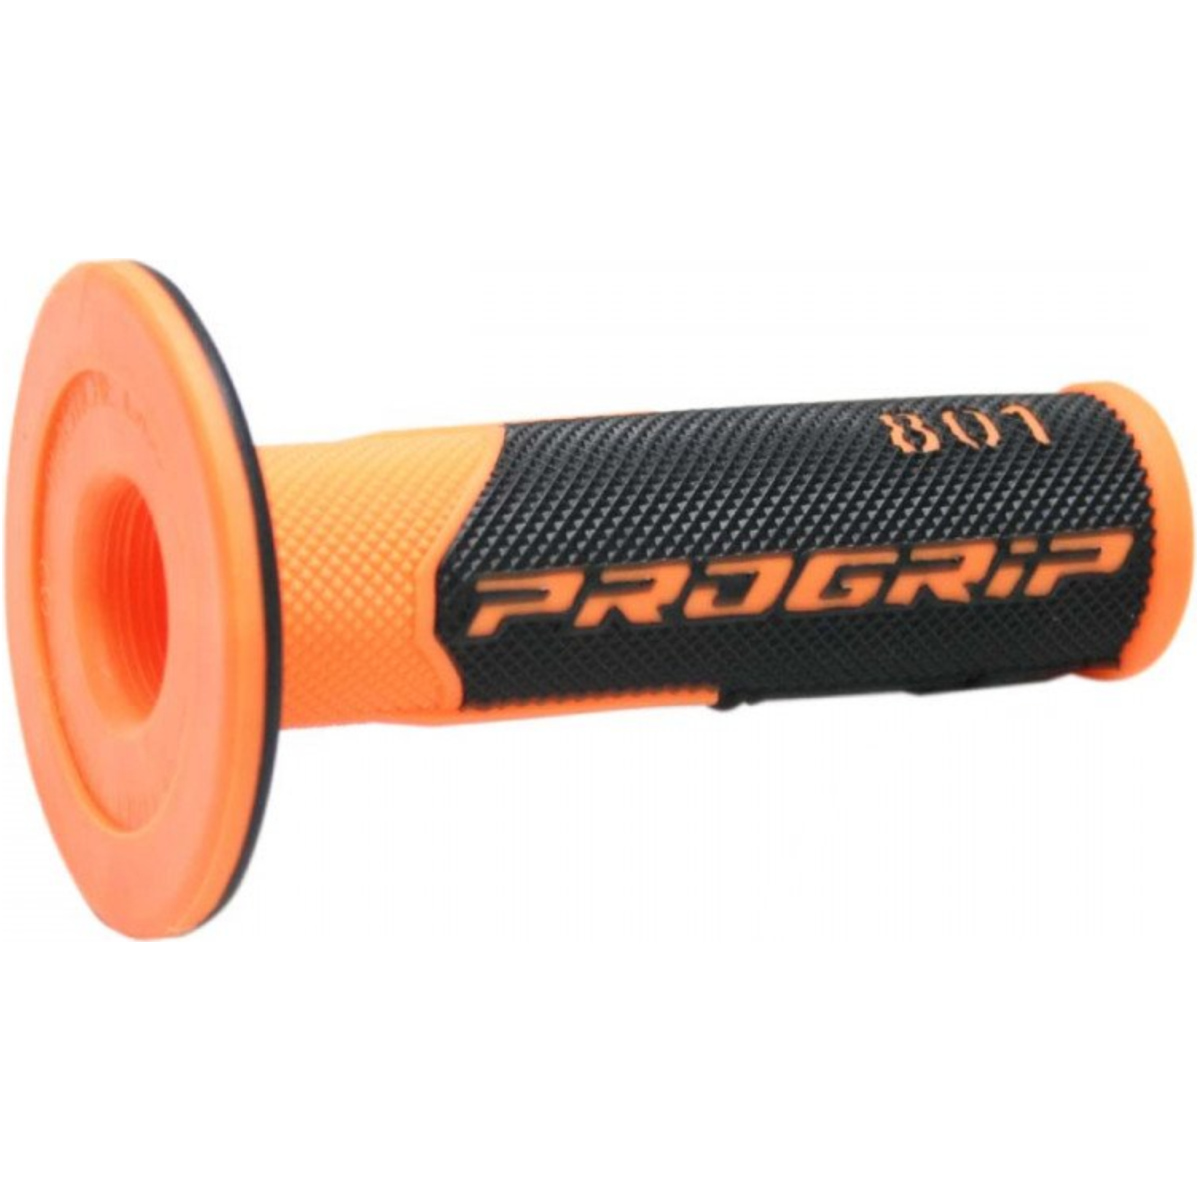 Progrip pa080100af02 lenkergriffe lenkergriffe griffgummi fluoreszierend orange / schwarz von Progrip